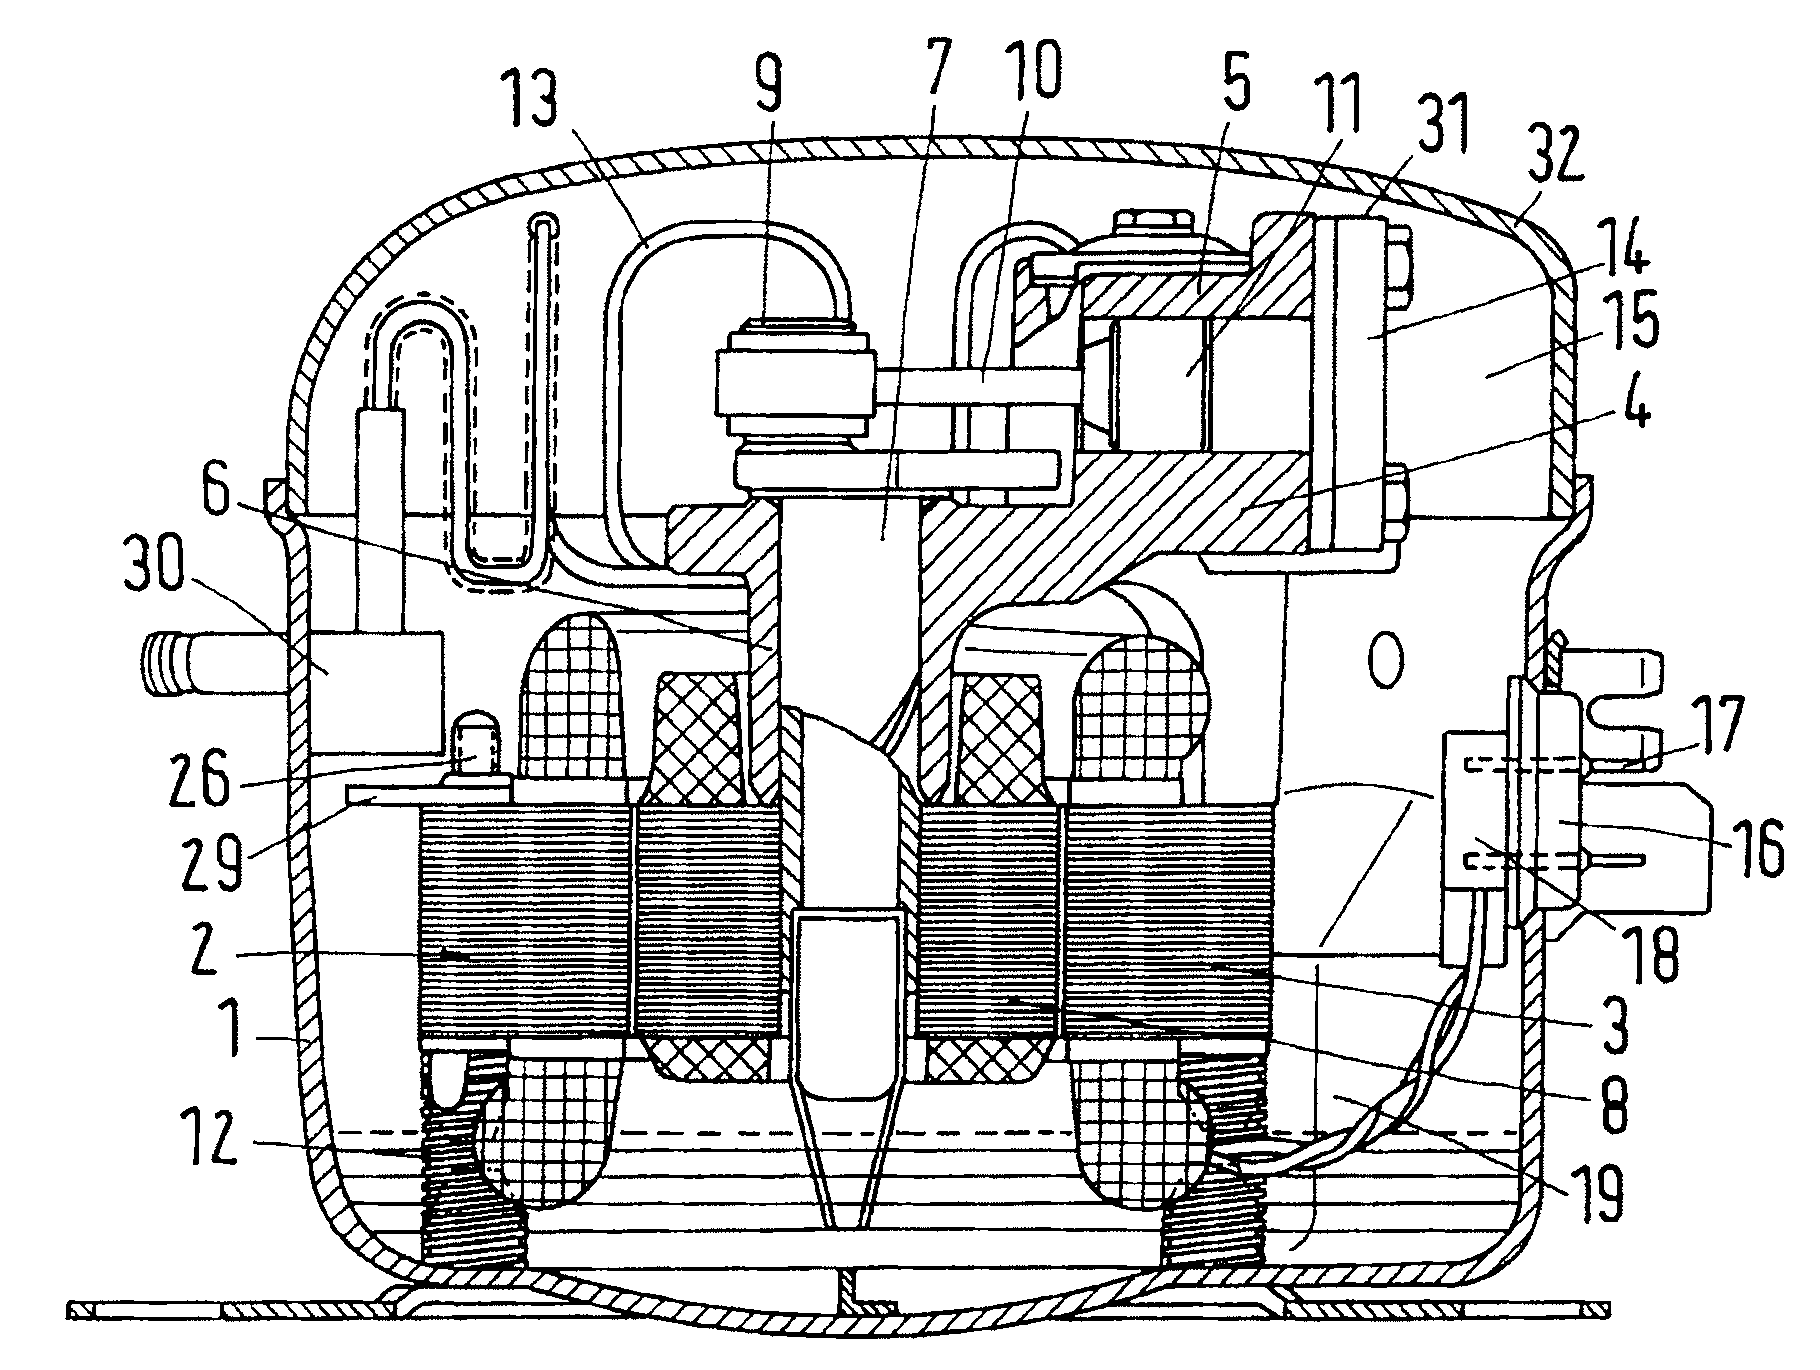 Refrigerant compressor arrangement